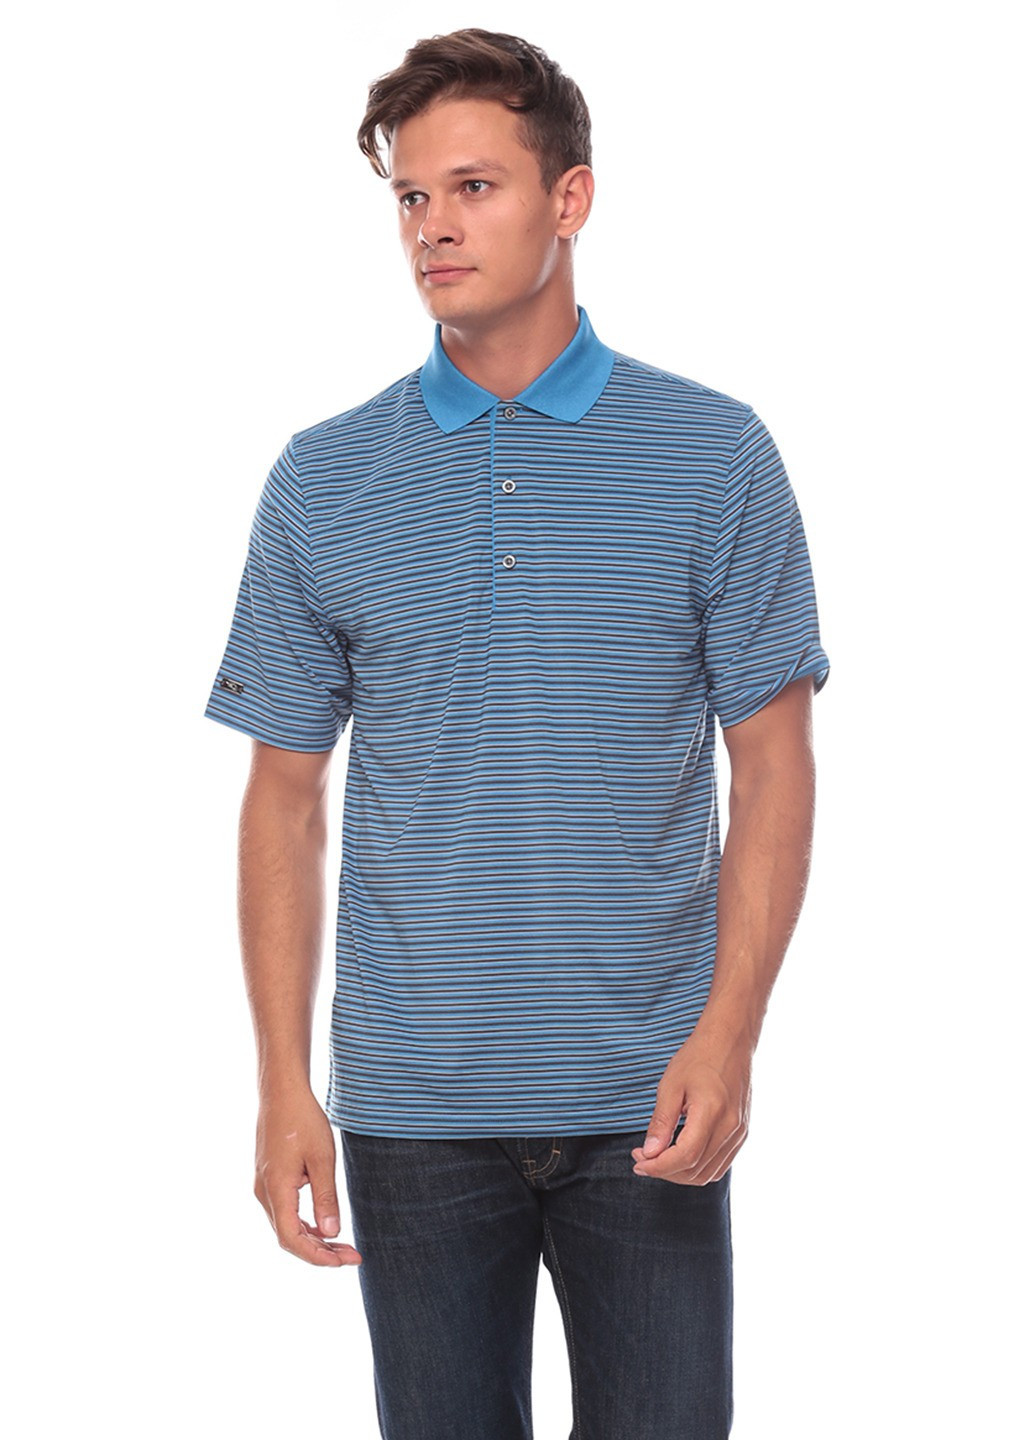 Светло-синяя футболка-поло для мужчин Greg Norman в полоску